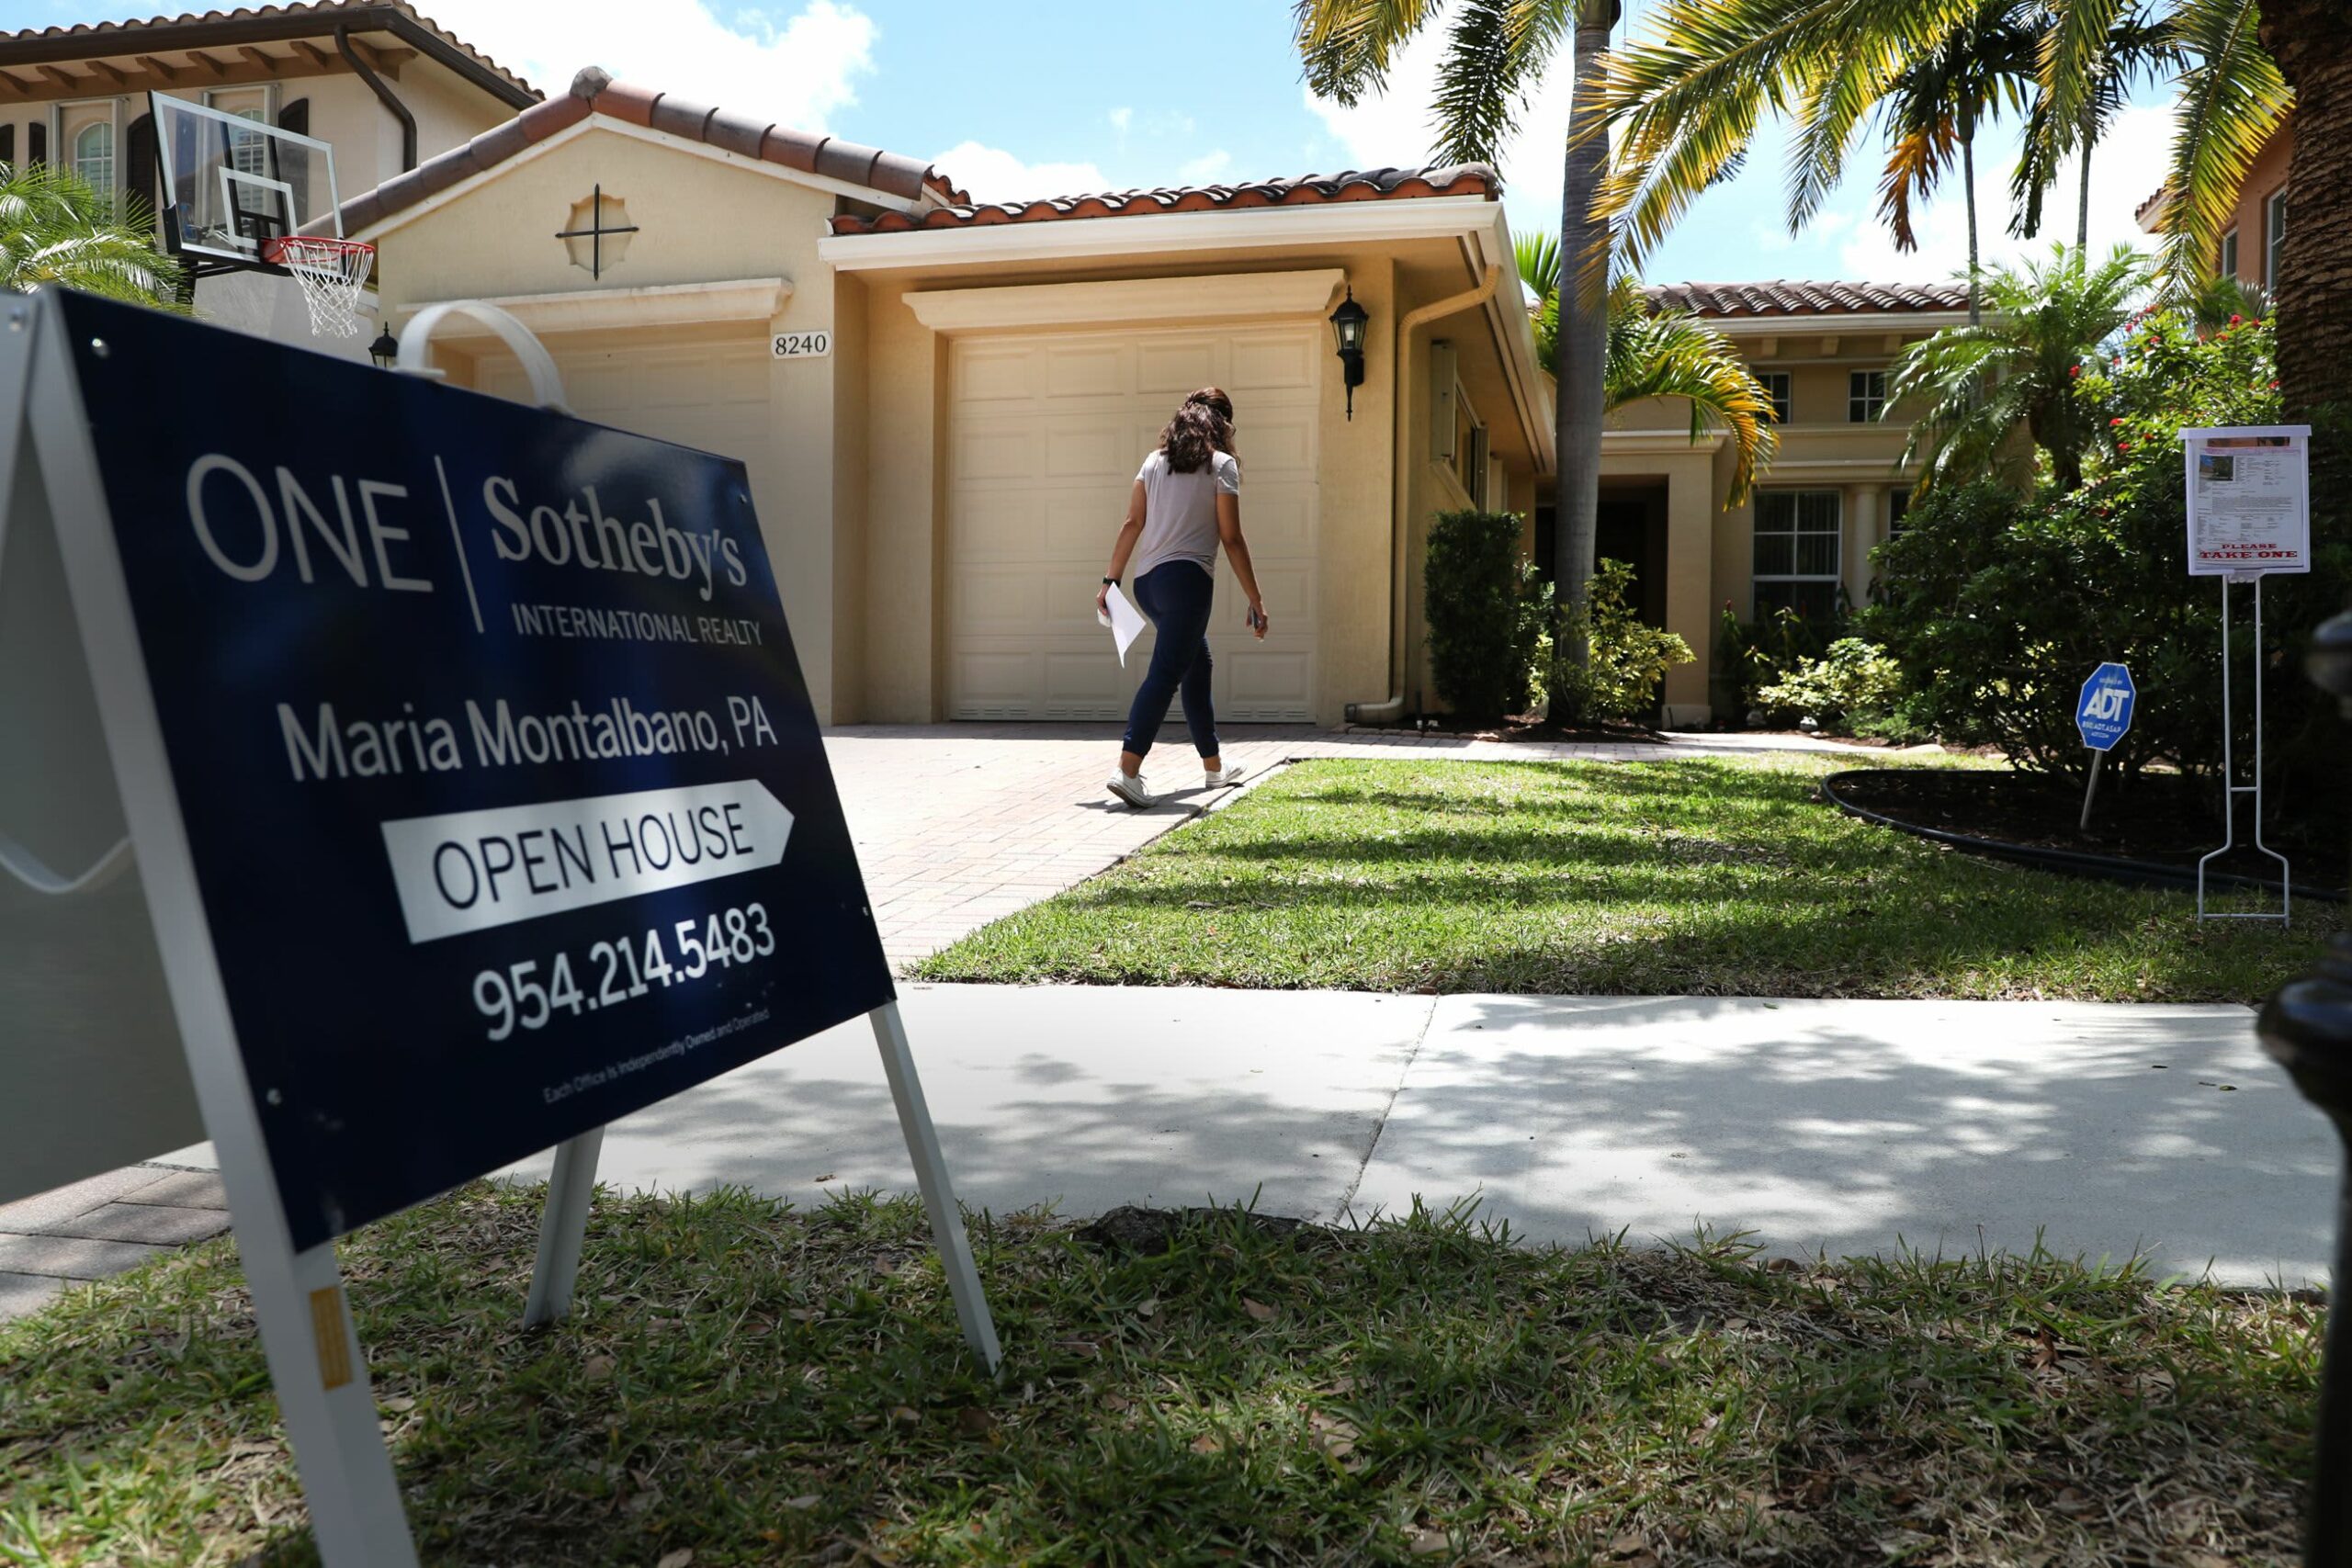 ירידות מחירי הדירות עשויות להסתיים, אומר S&P Case-Shiller